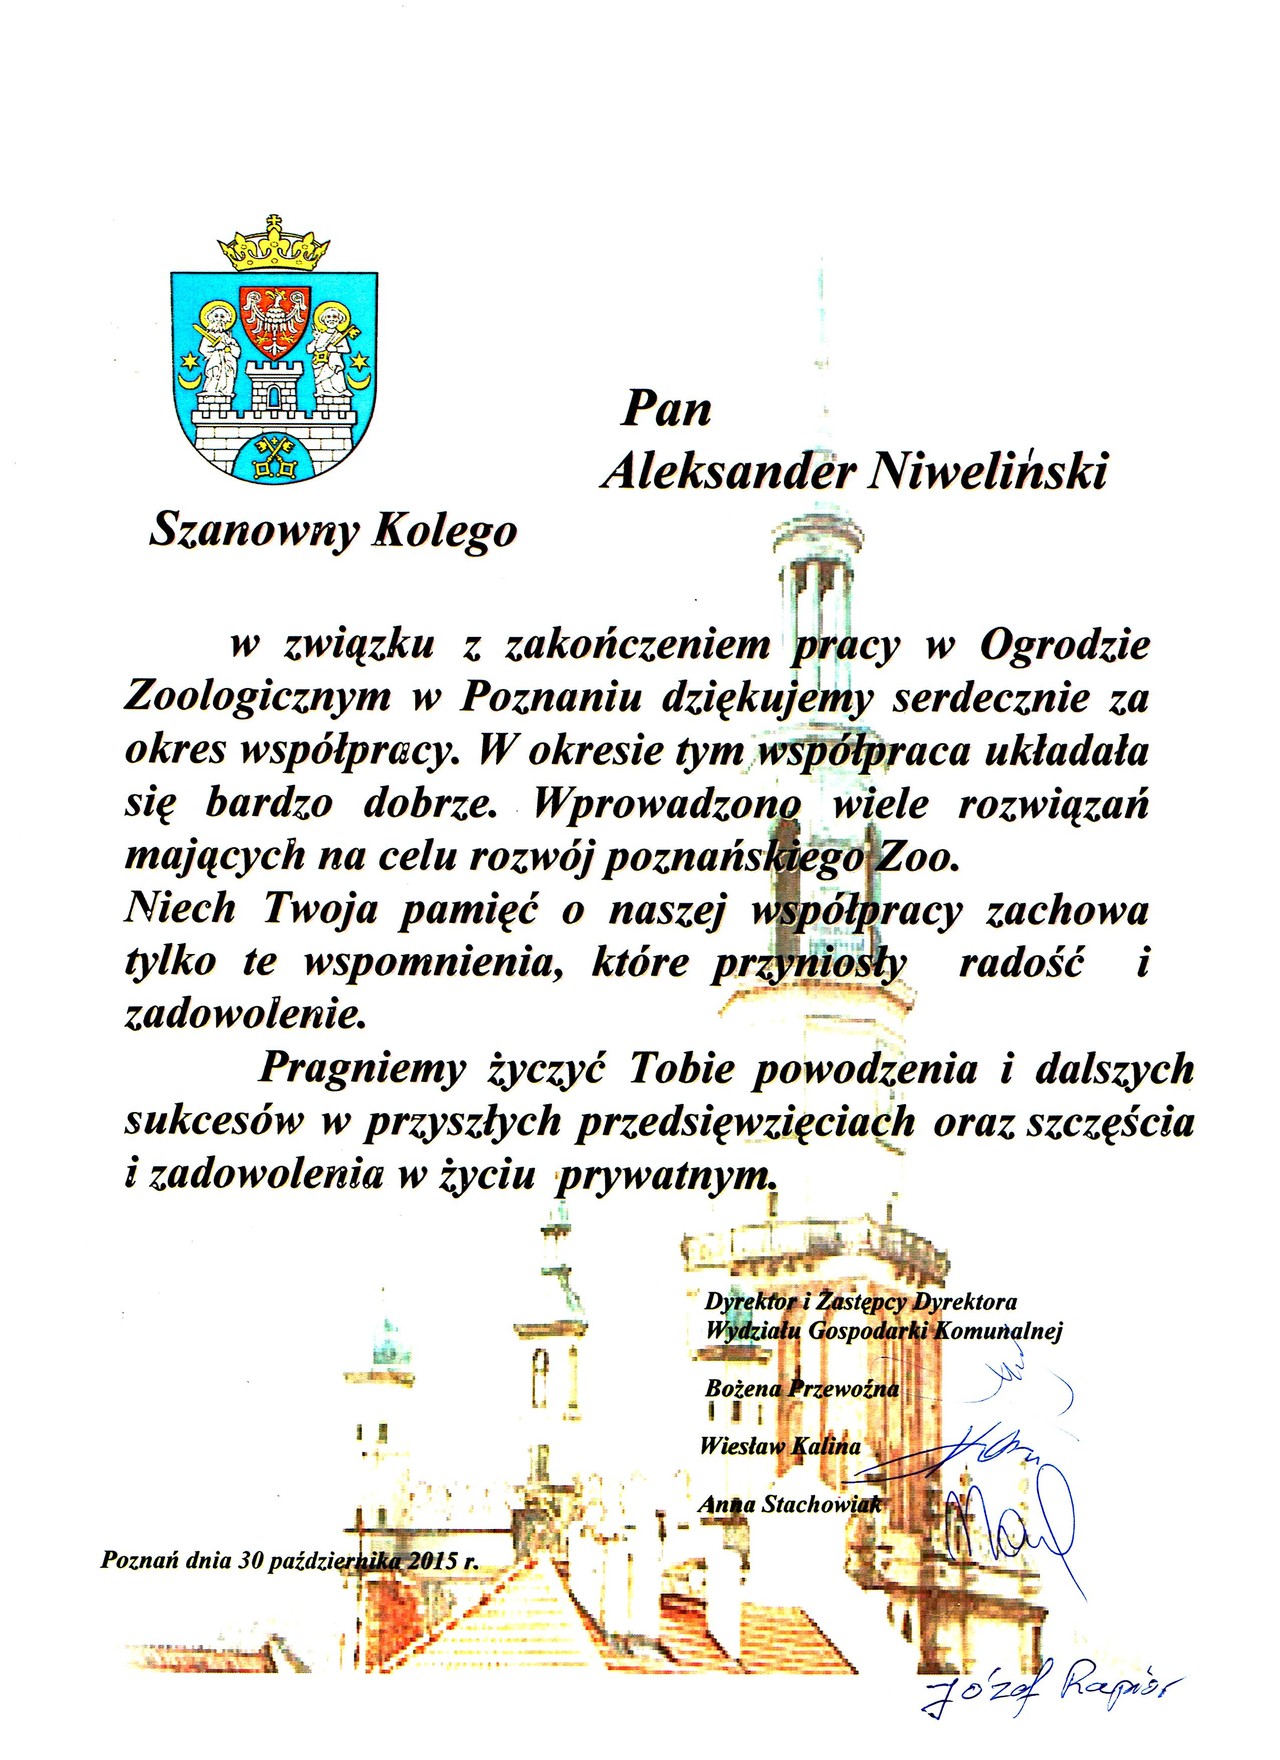 Acknowledgements Aleksander Niweliński - Poznań Municipal Office